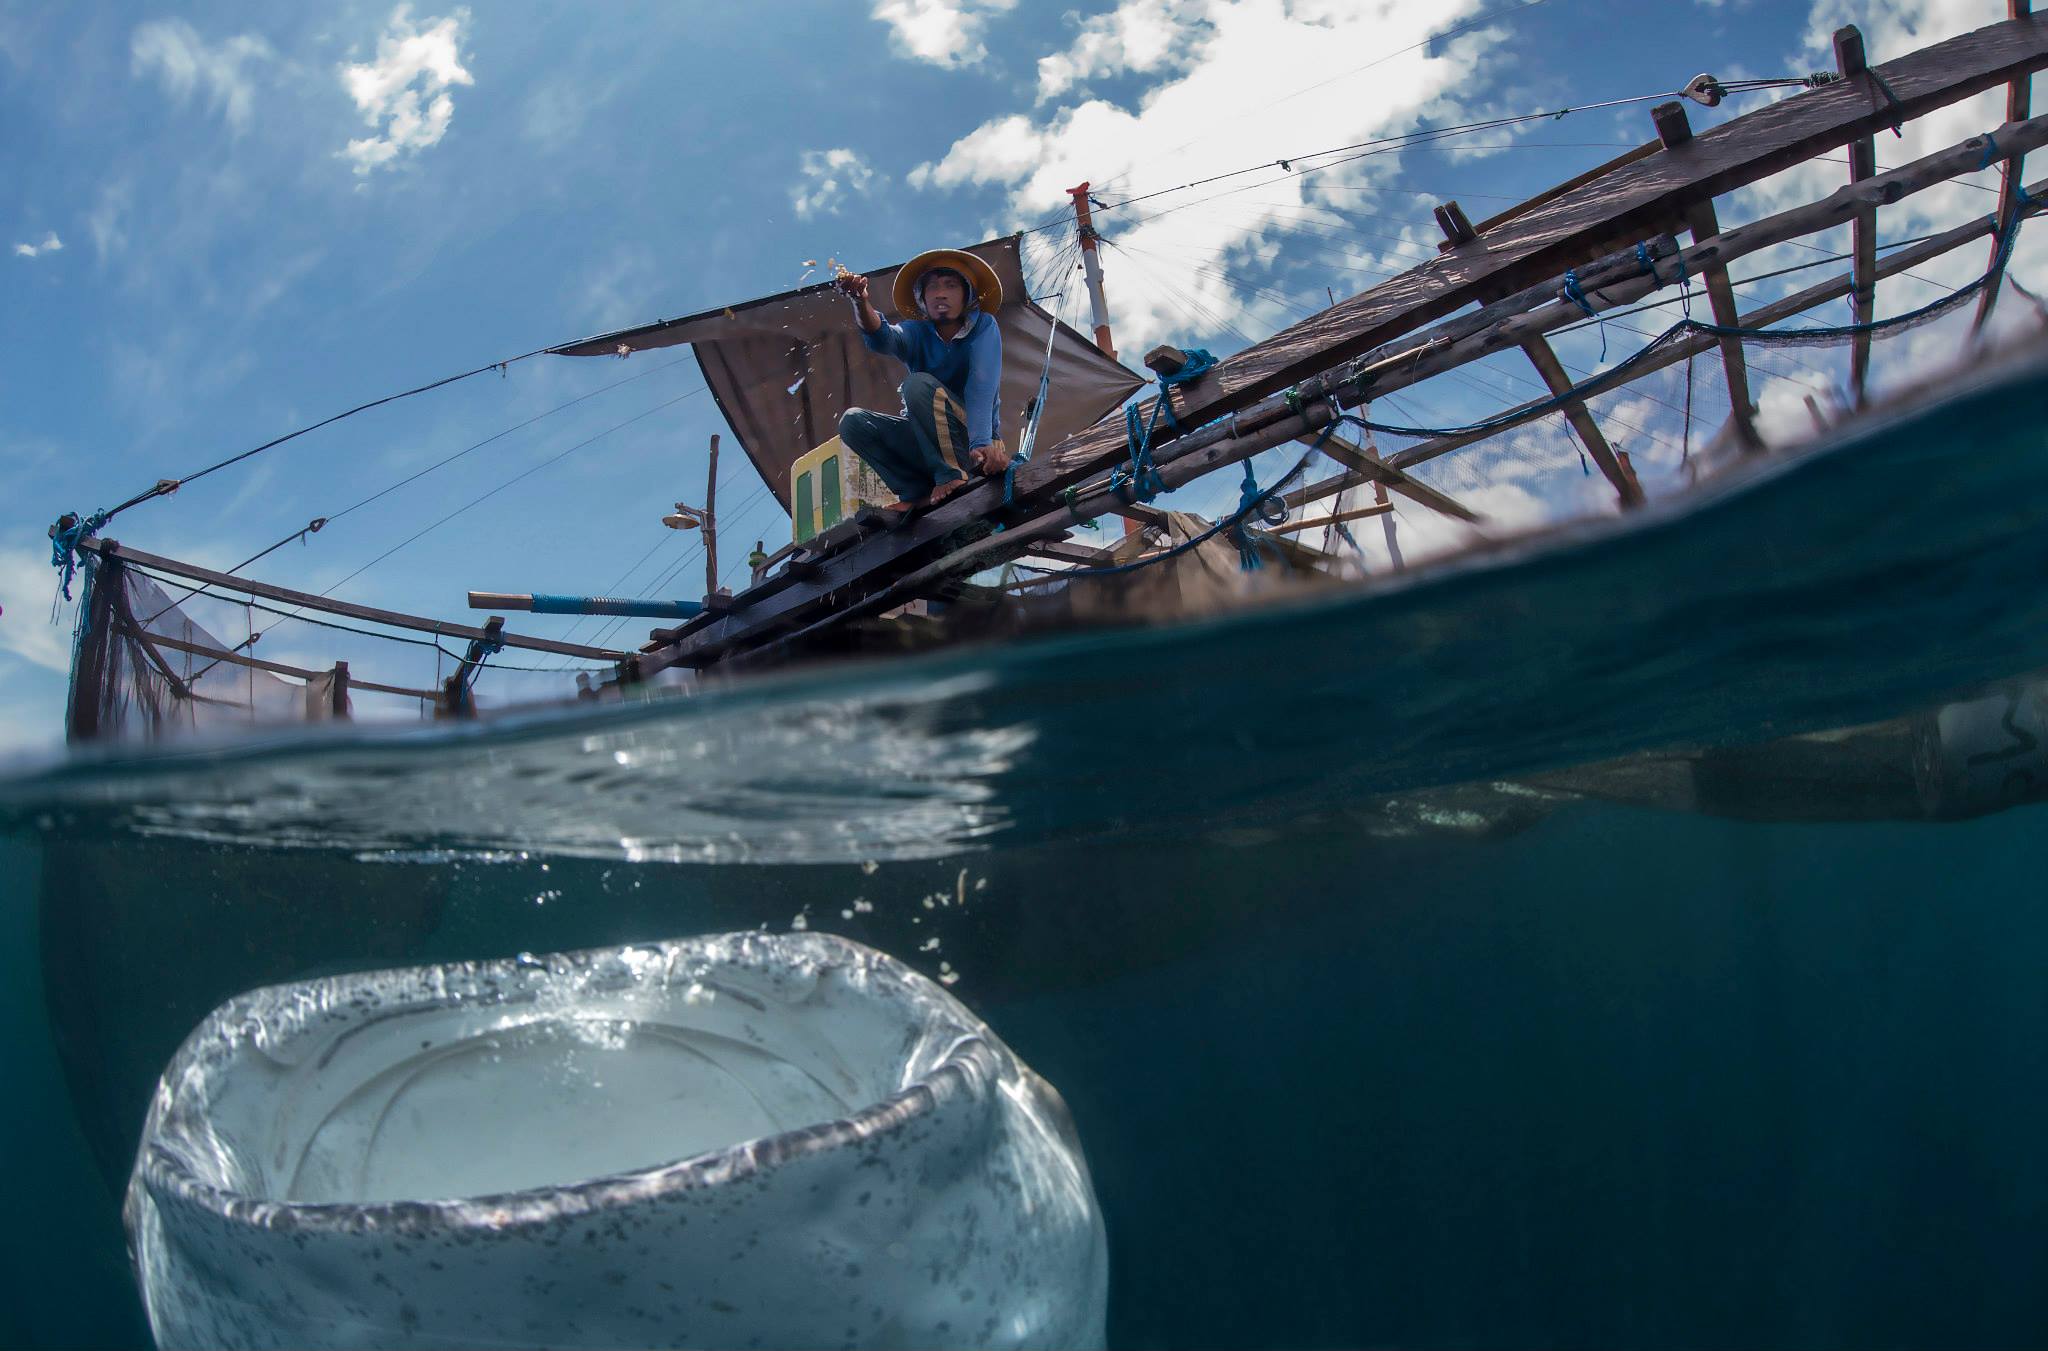 Whale shark and bagan fisherman in Cenderawasih Bay